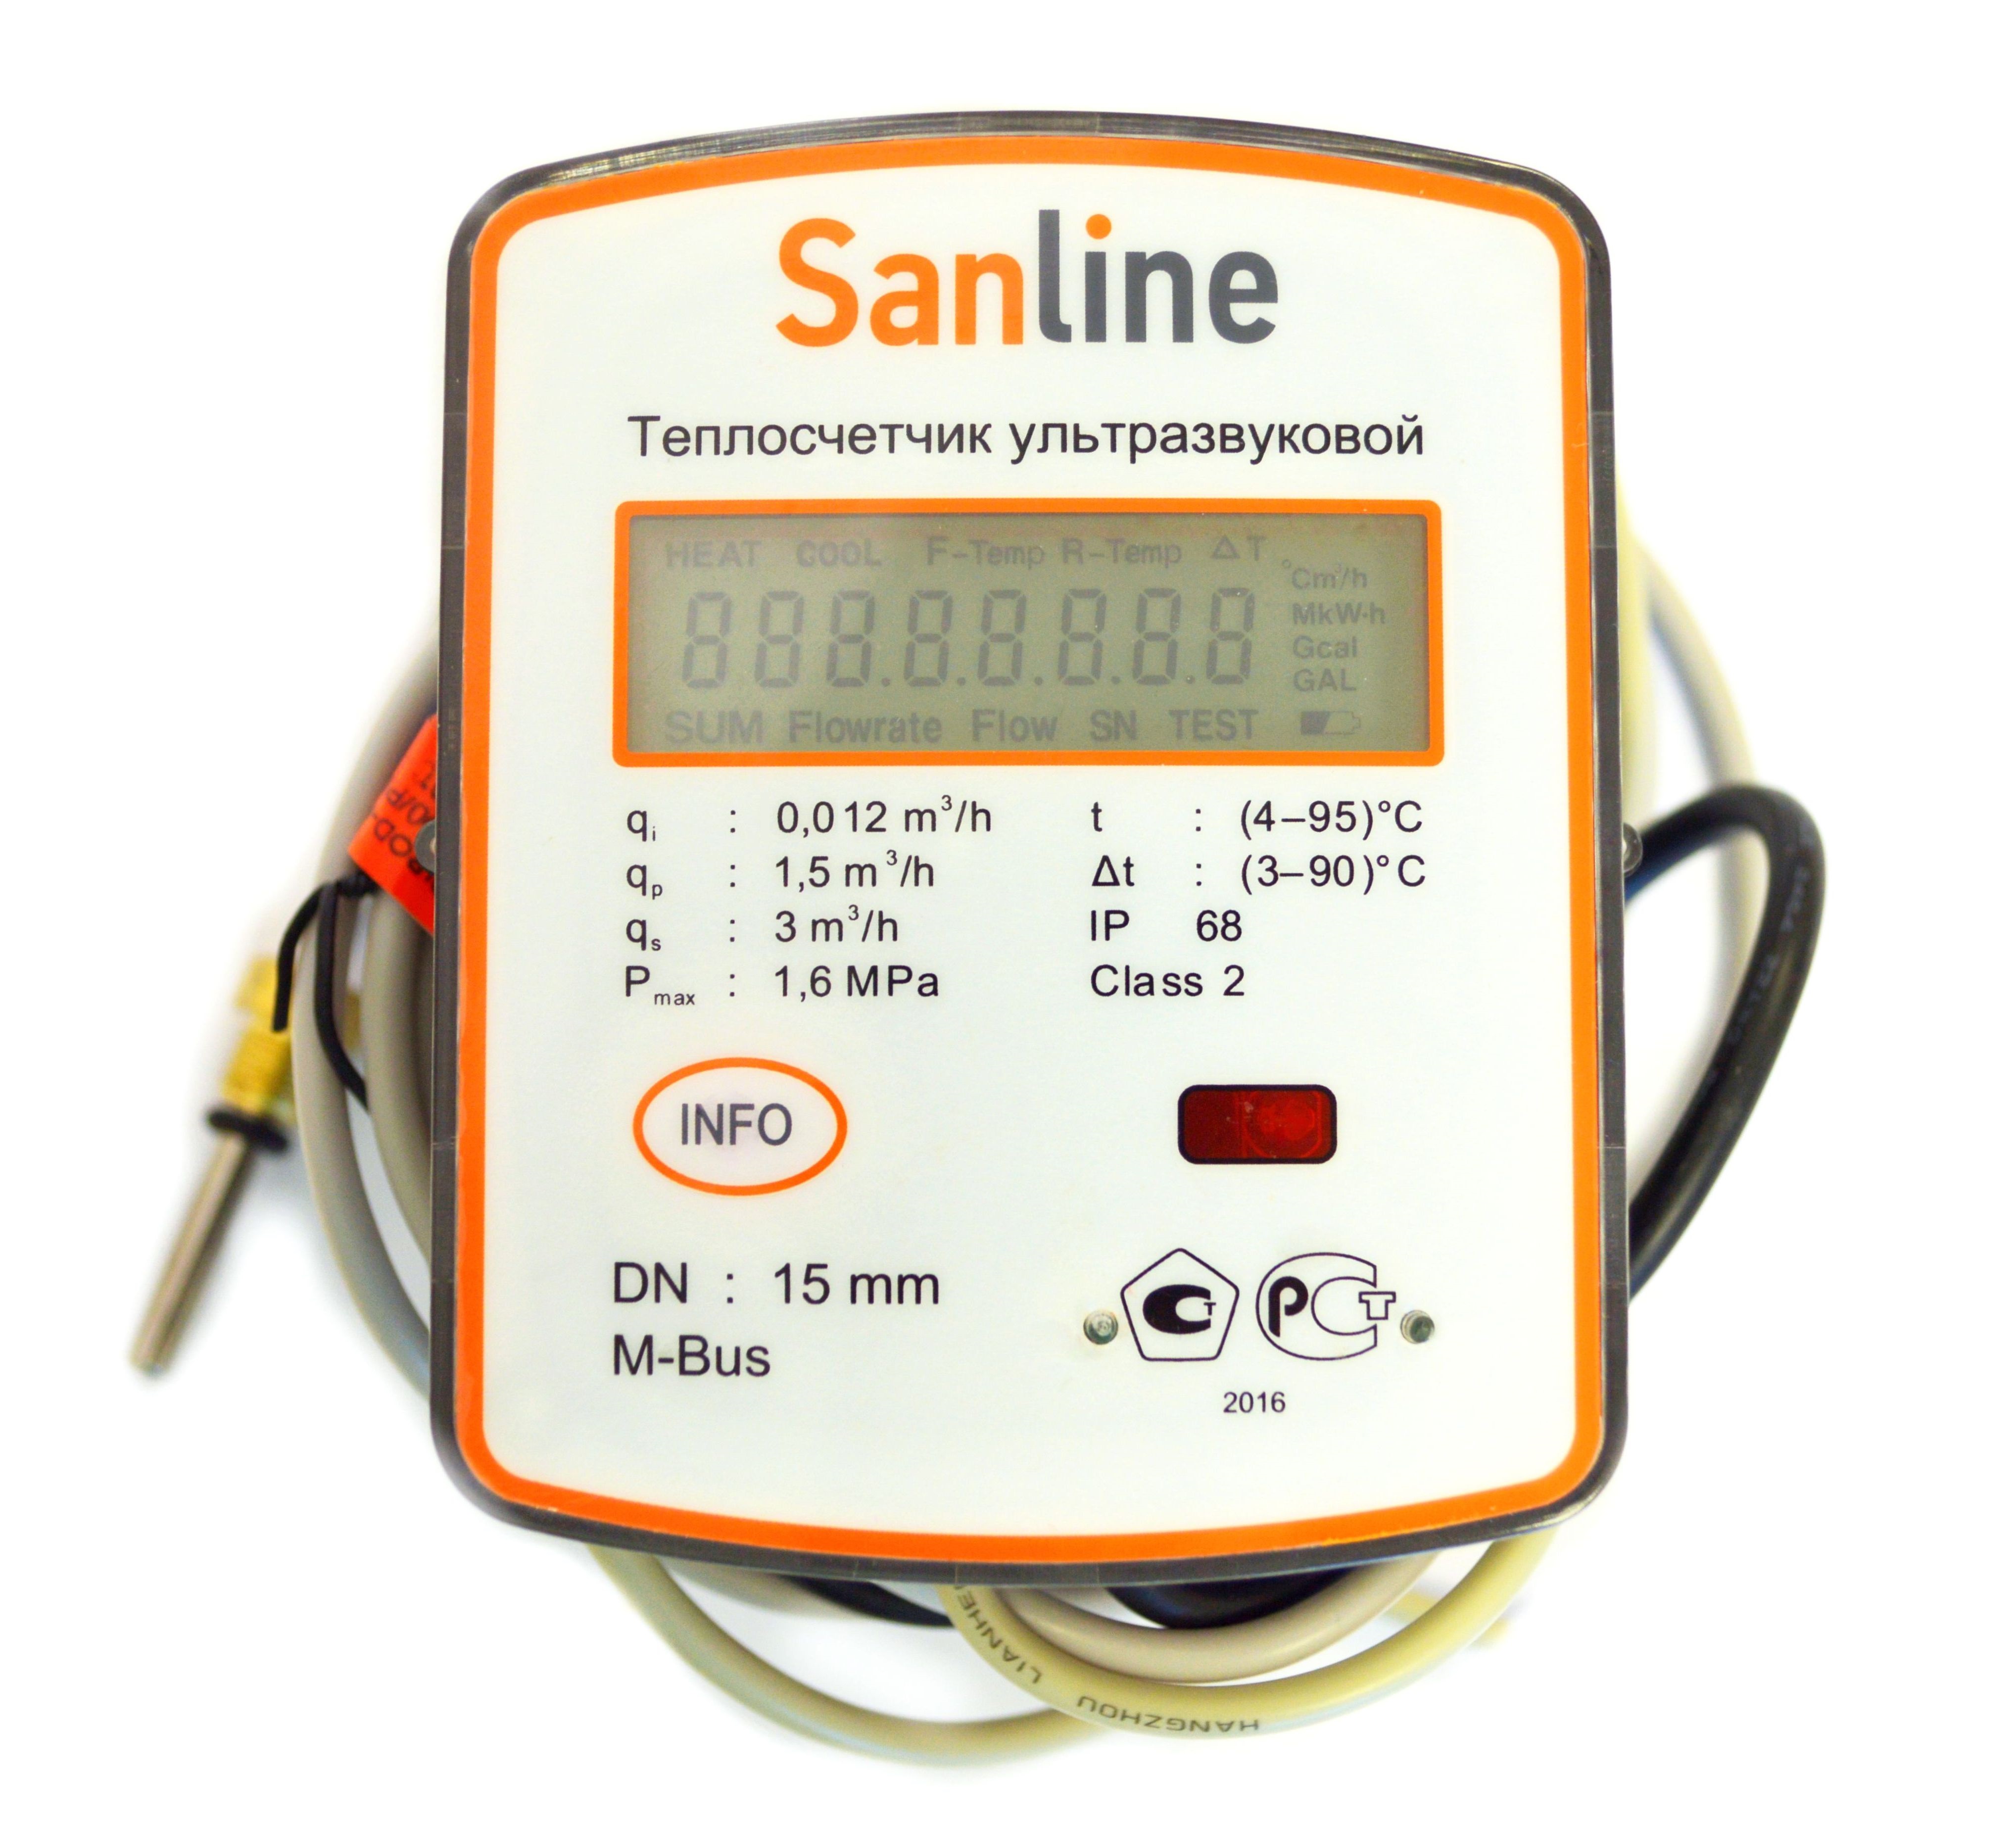 Теплосчетчик ультразвуковой SanLine, расход 0.6 куб.м/ч, Ду15, M-Bus, IP 68